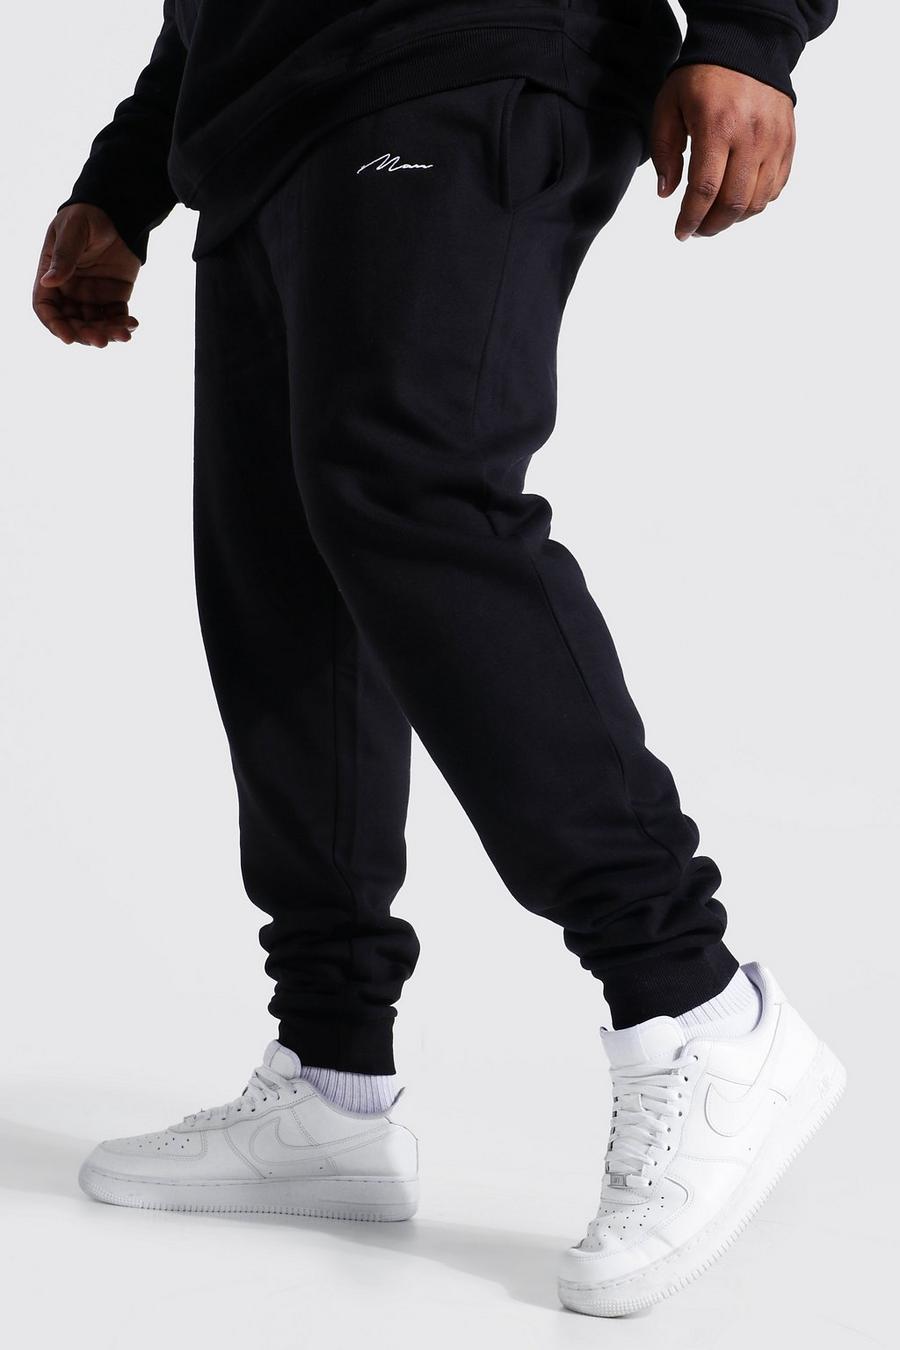 שחור מכנסי ריצה סקיני מבד ממוחזר עם כיתוב MAN למידות גדולות image number 1